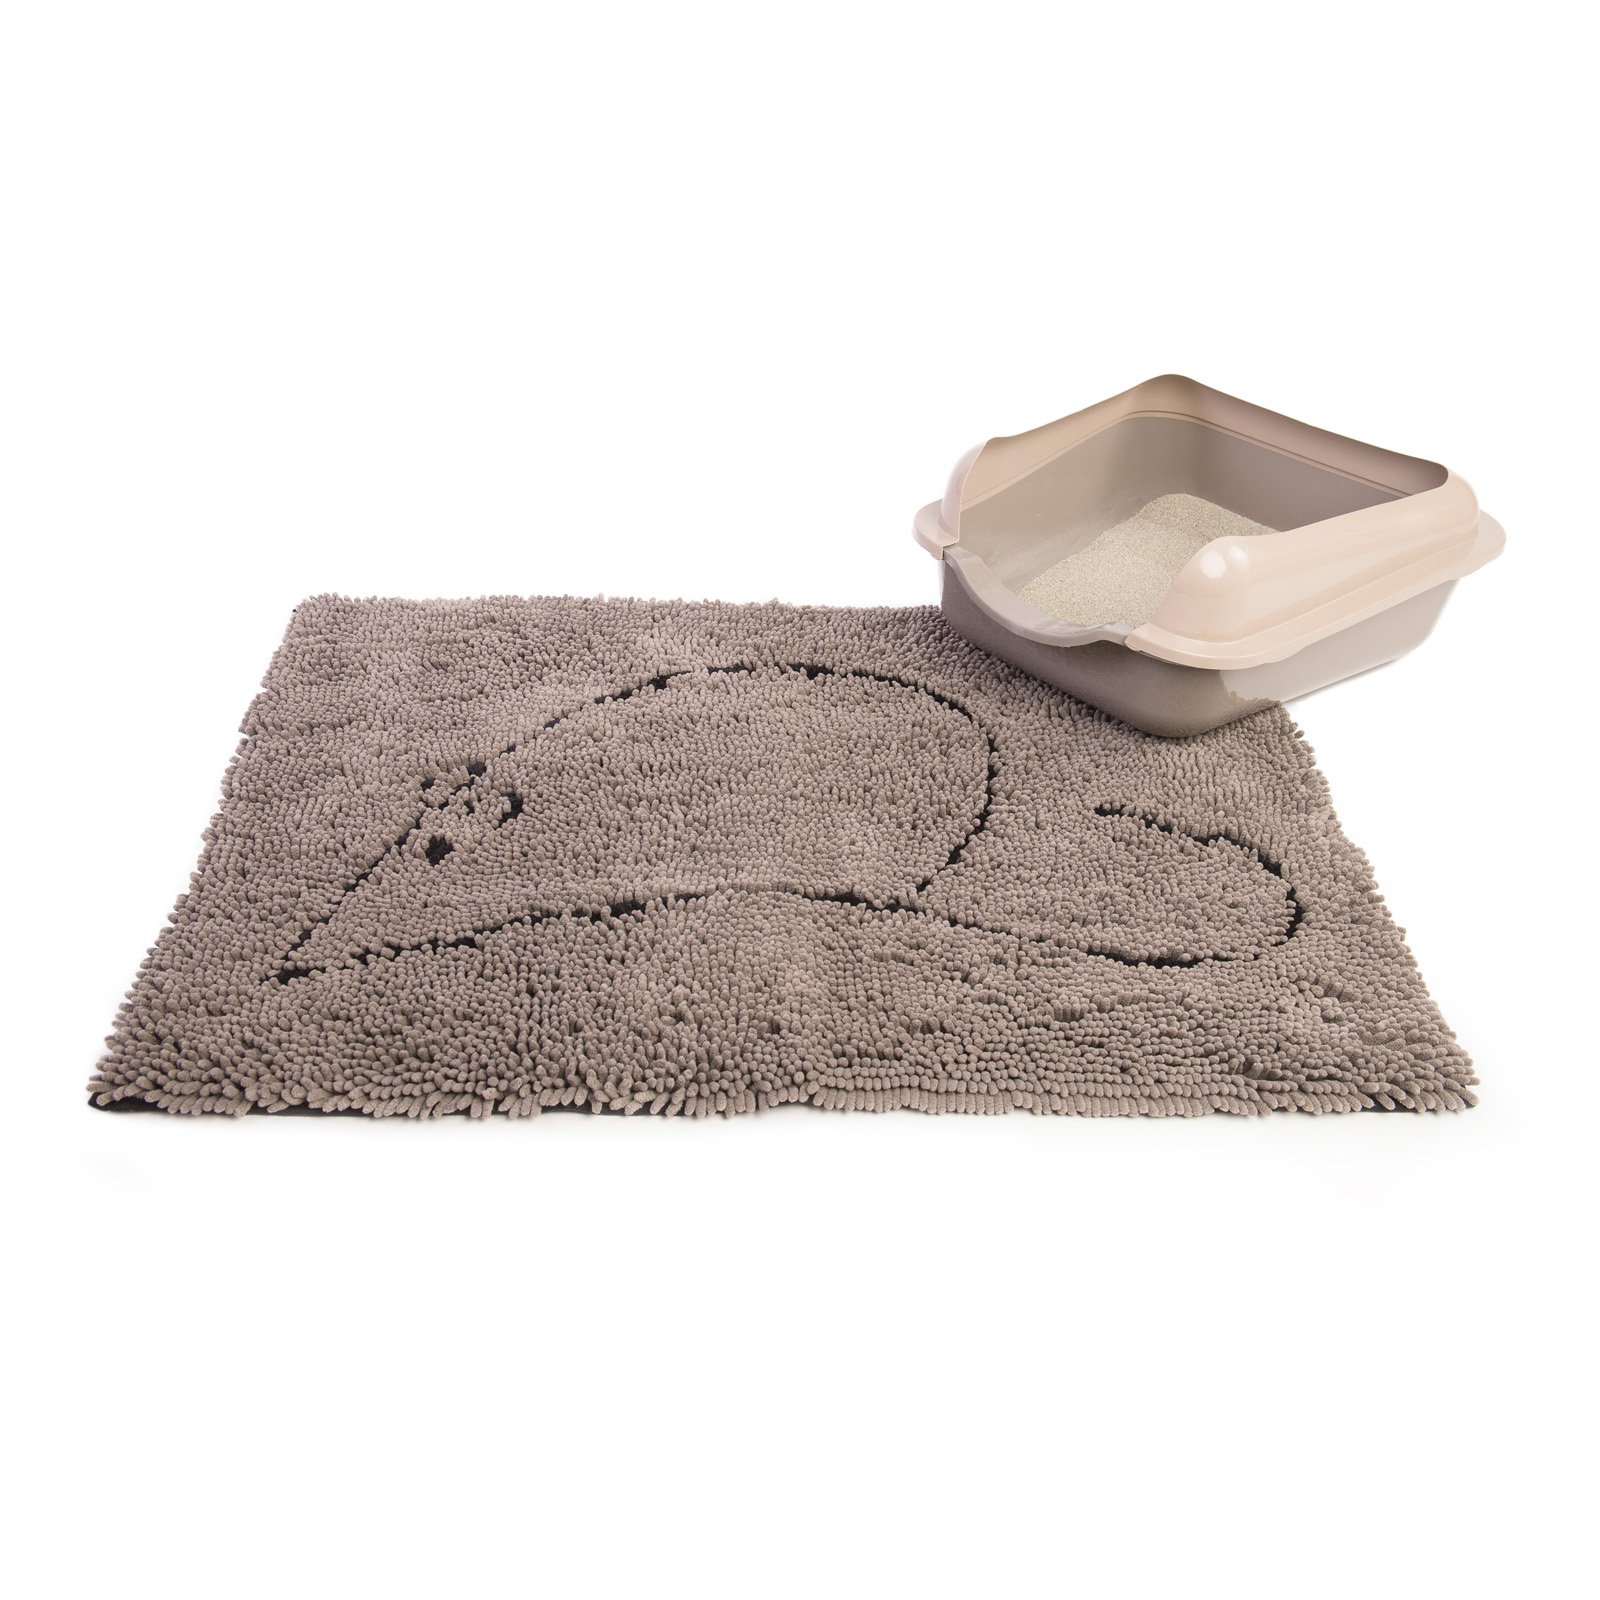 Dog Gone Smart Grey Cat Litter Mat - (35"x26")